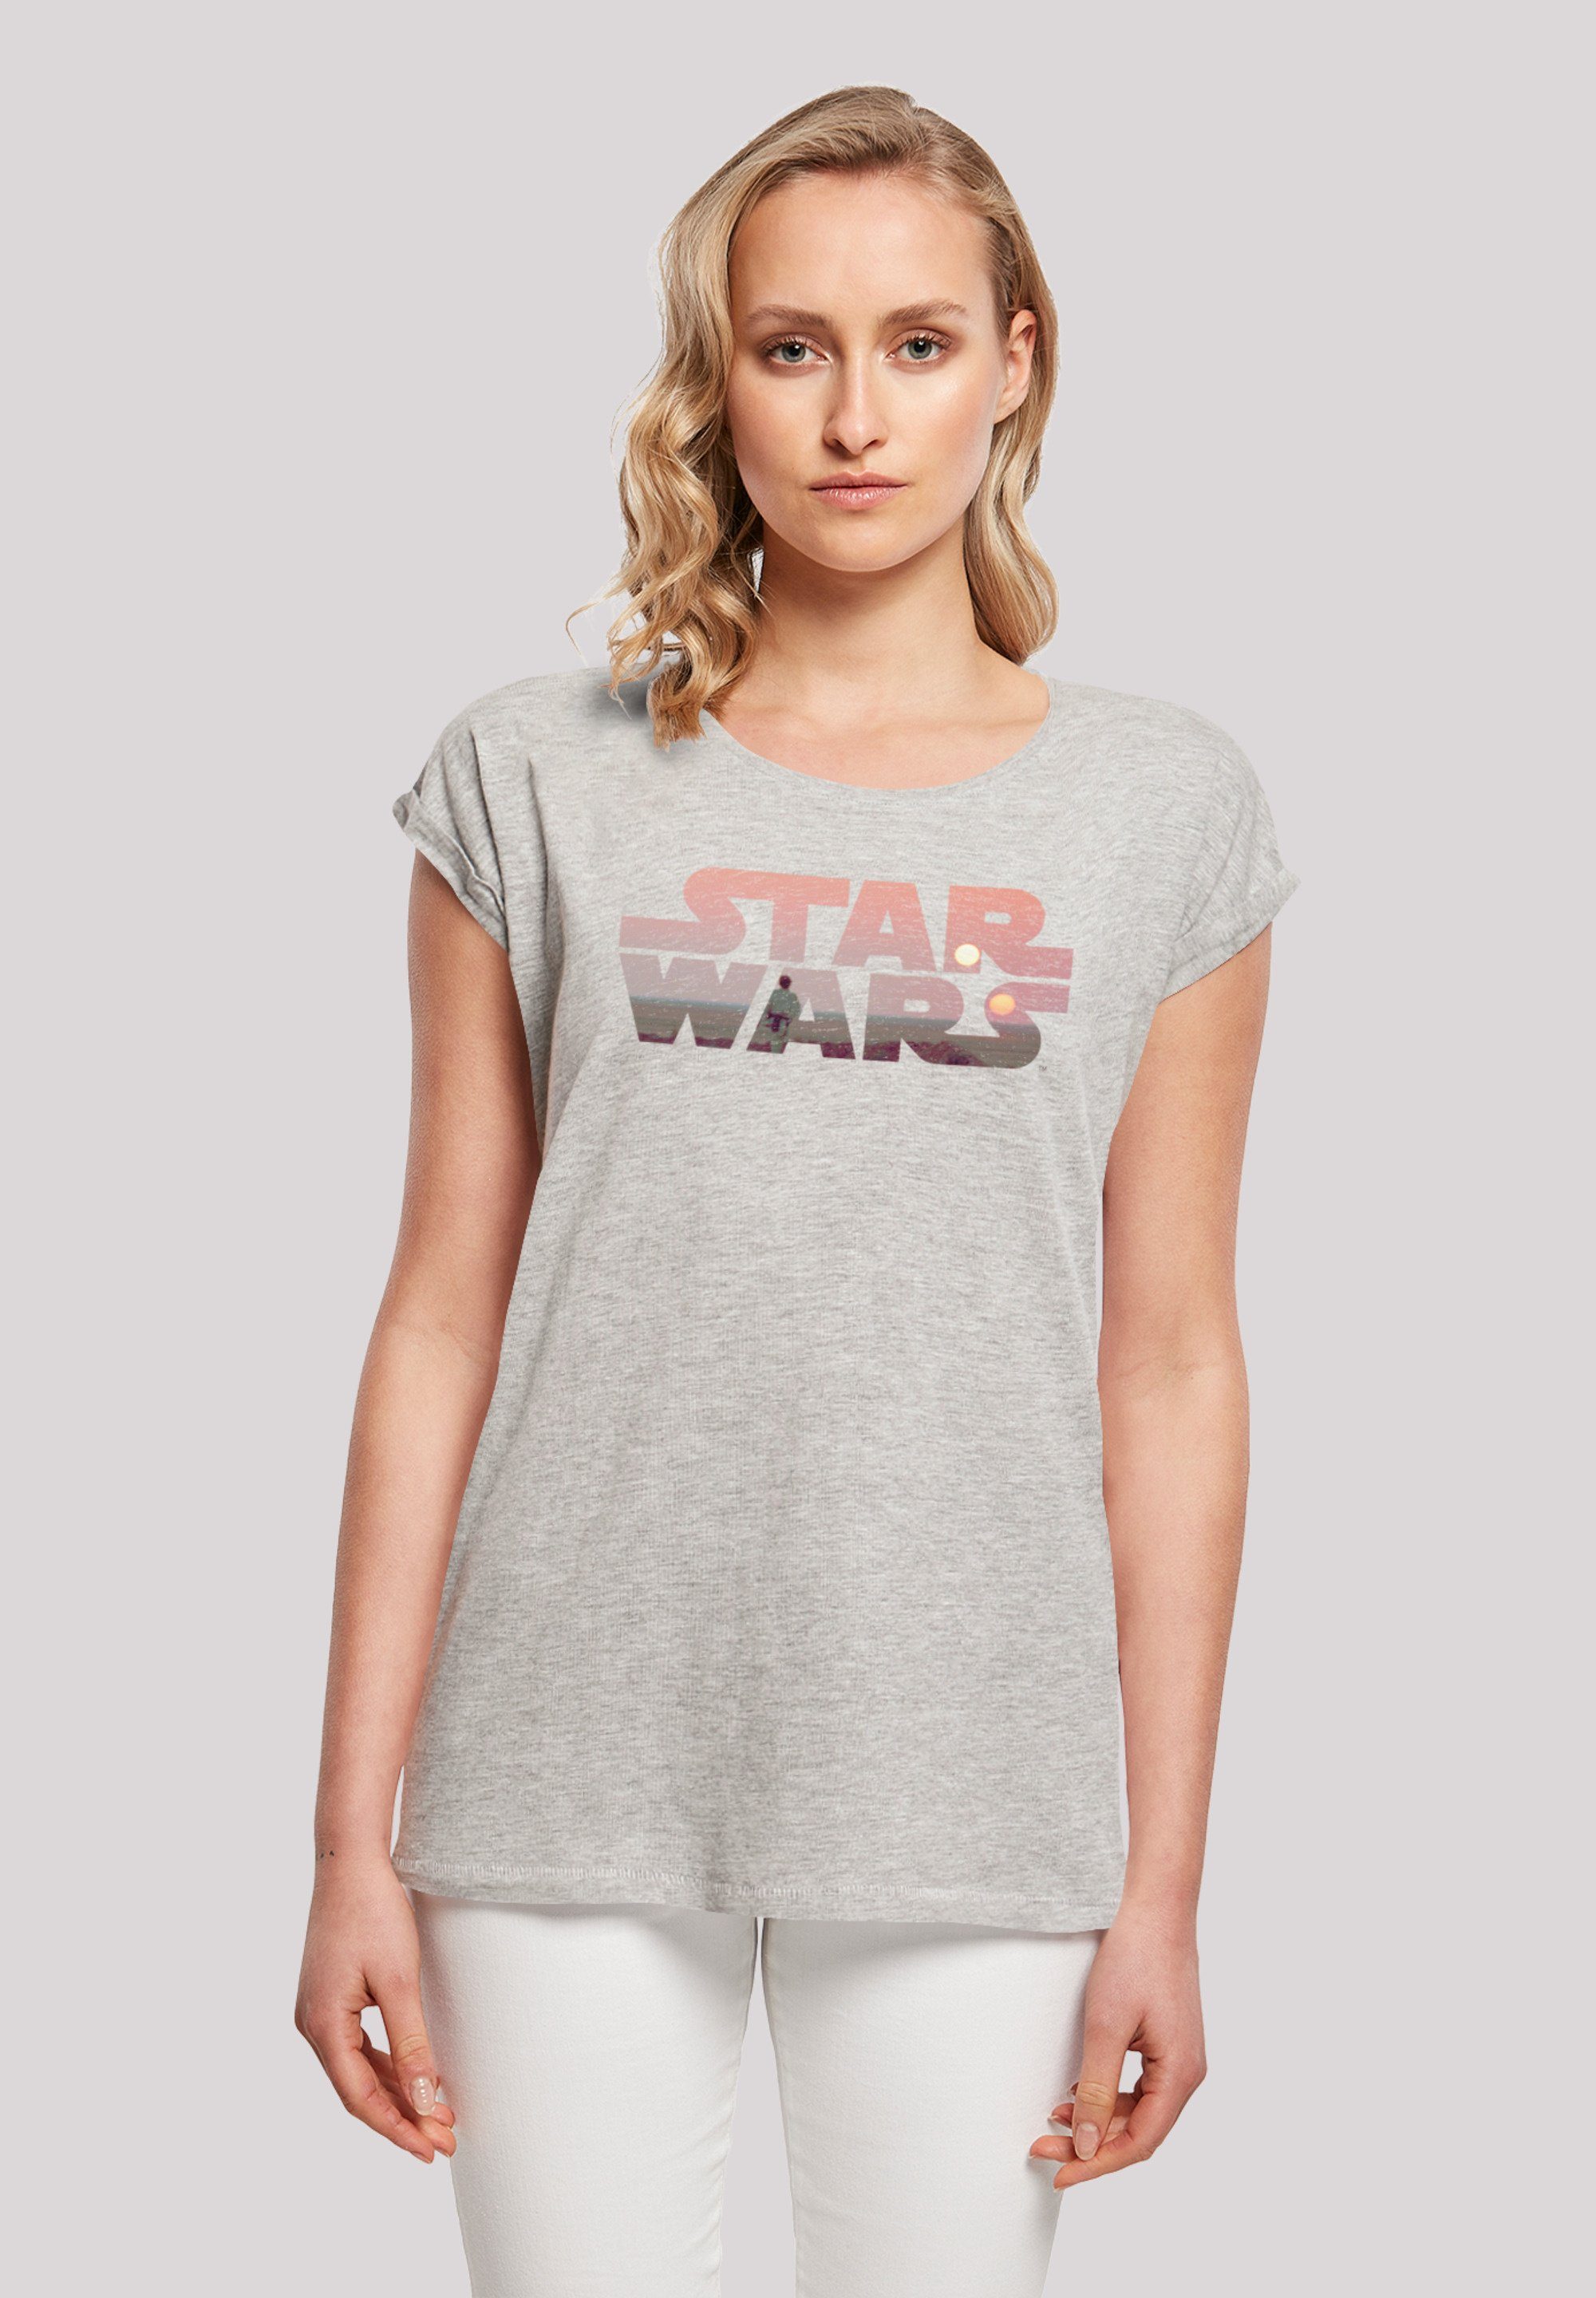 Star Logo Print, lizenziertes T-Shirt Offiziell T-Shirt Star F4NT4STIC Wars Wars Tatooine